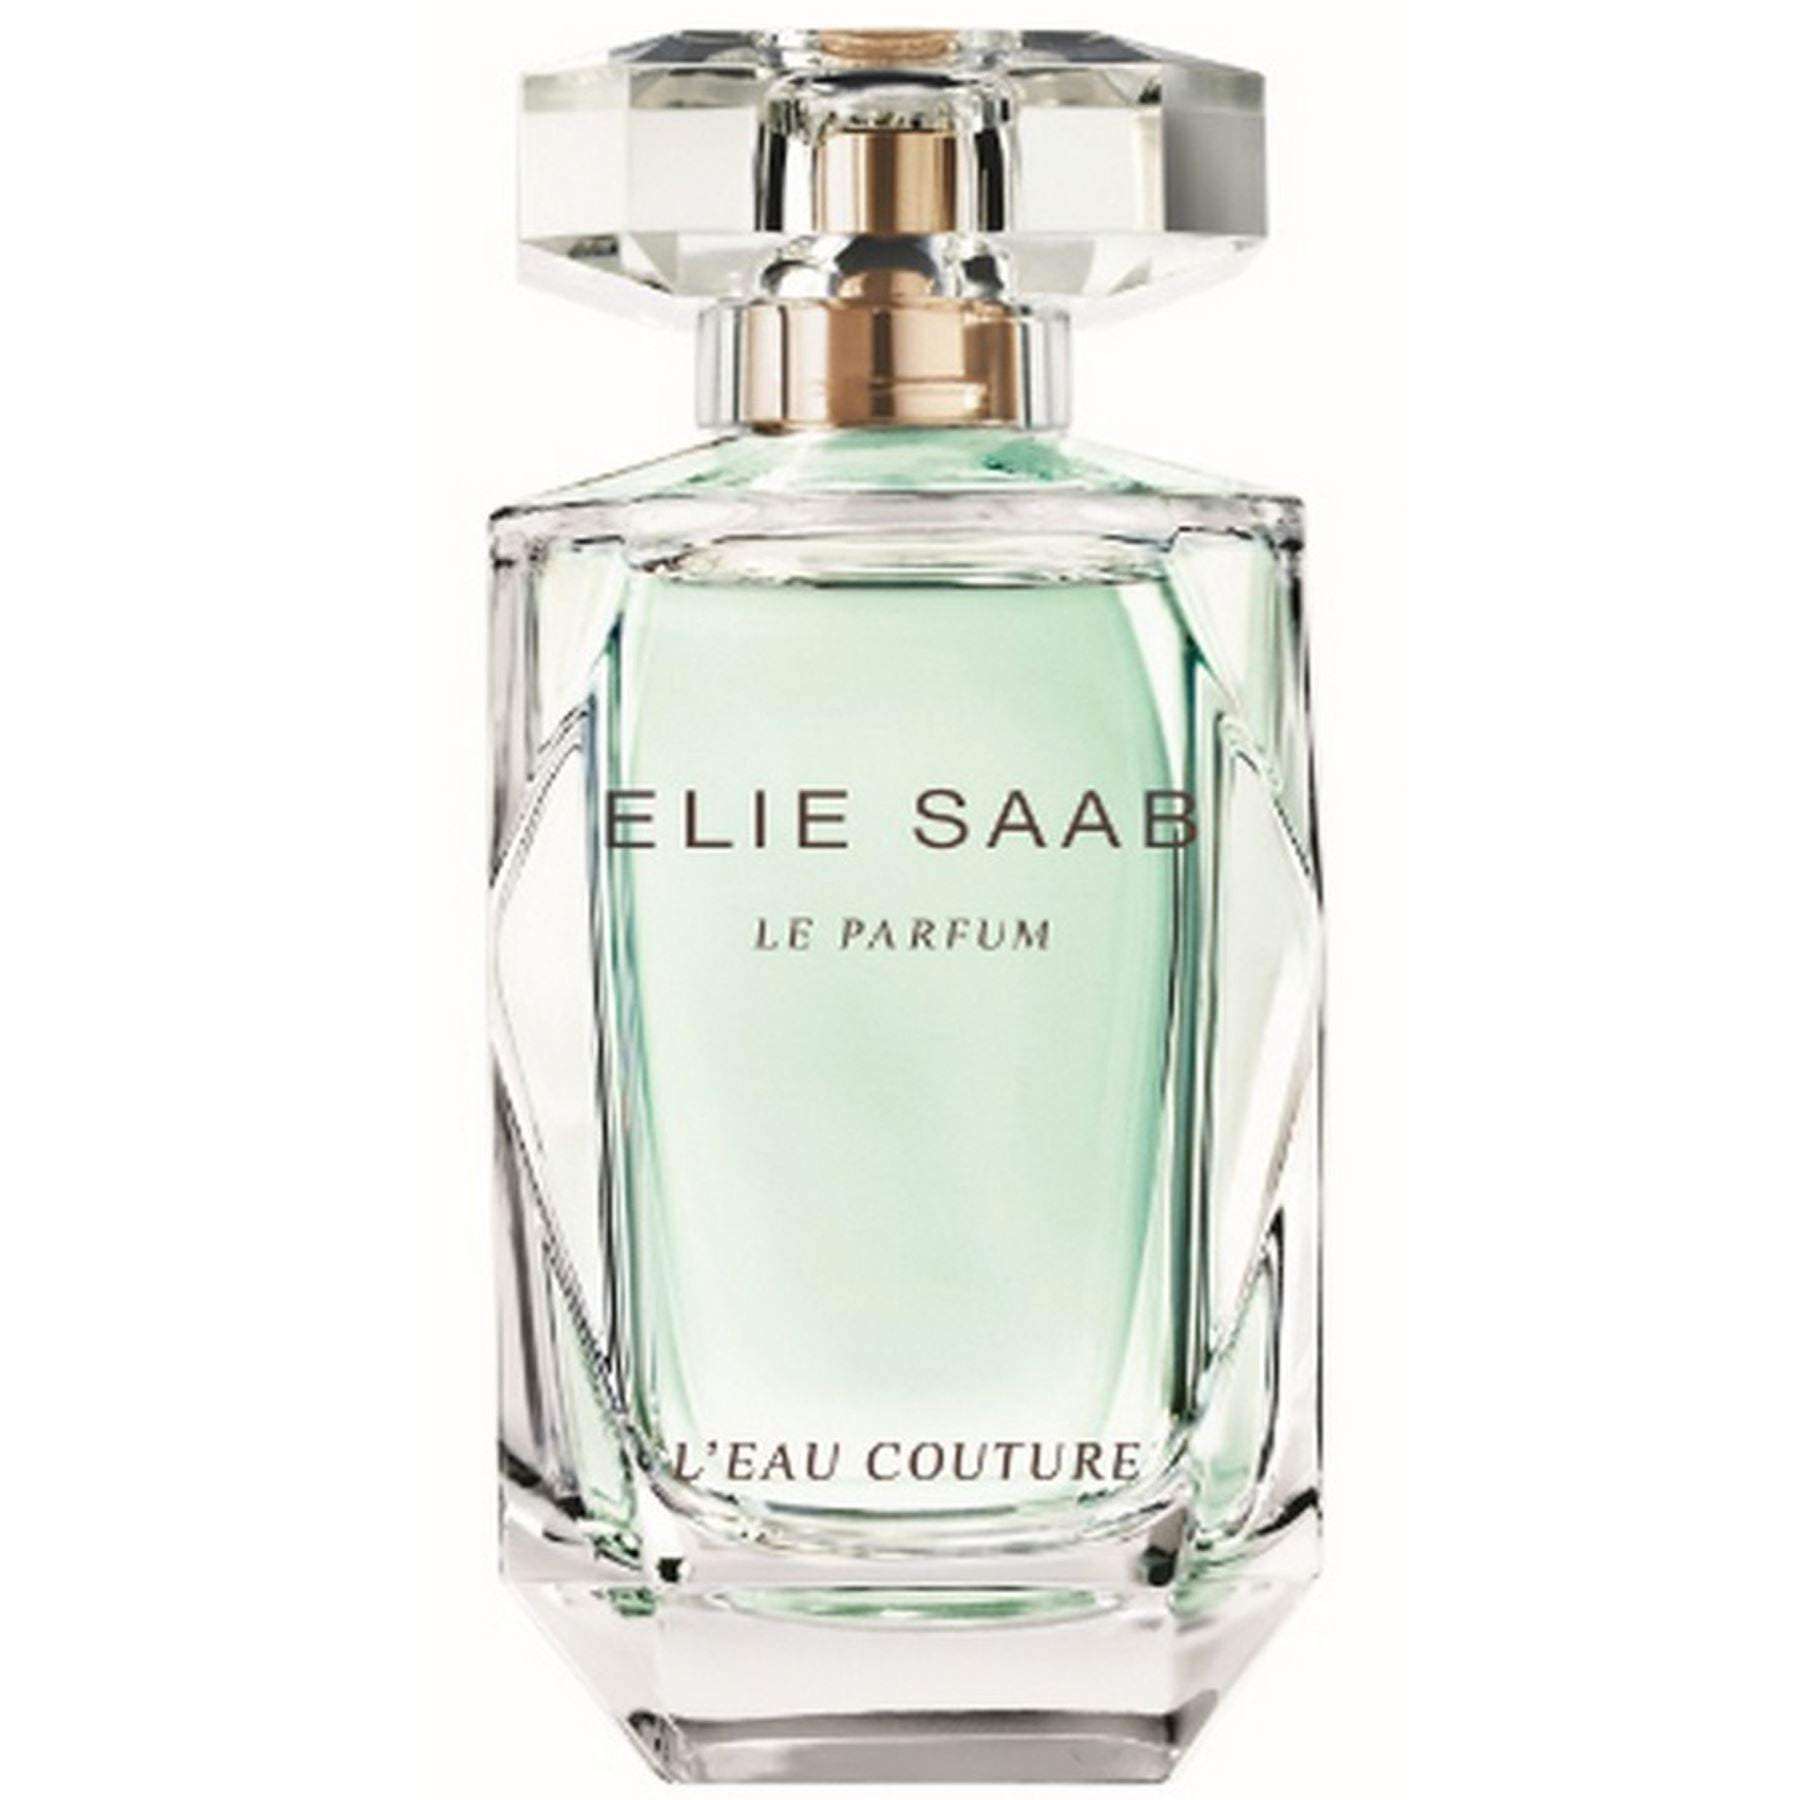 Elie Saab Le Parfum L'Eau Couture - Tester | Buy Perfume Online | My